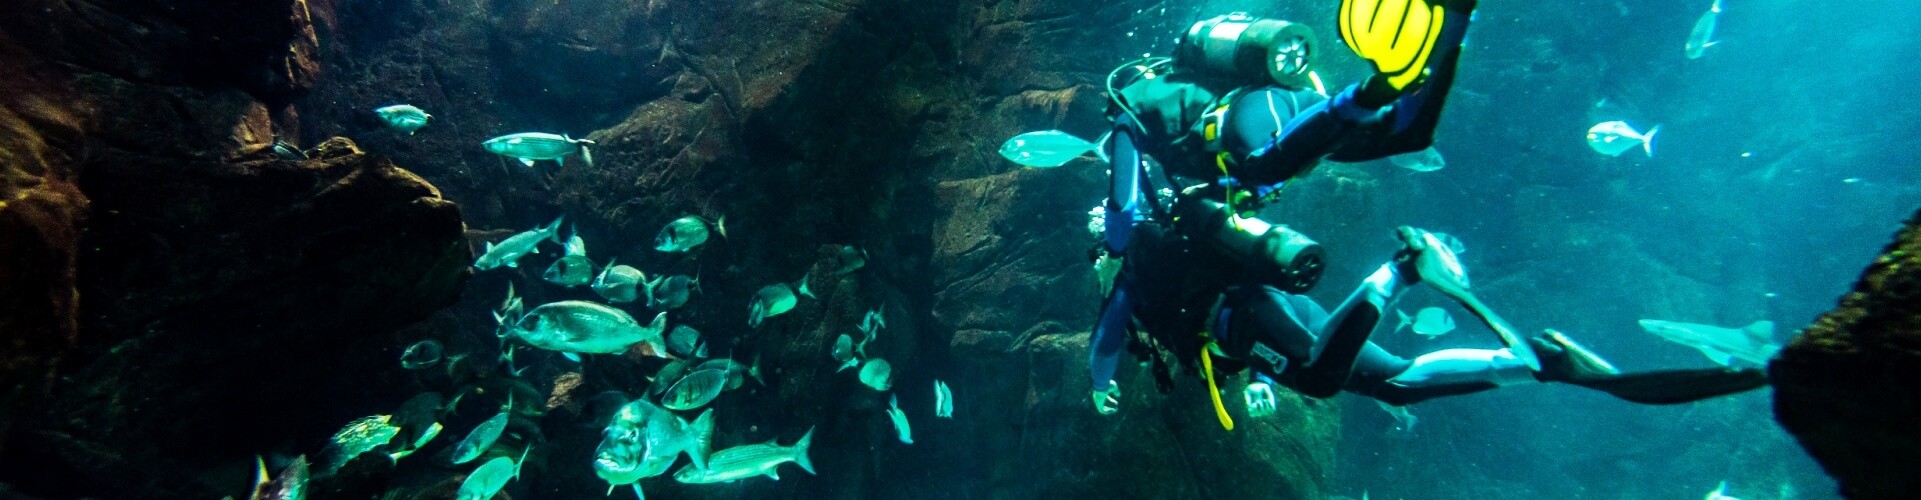 Diving experience in Madeira Aquarium Porto Moniz